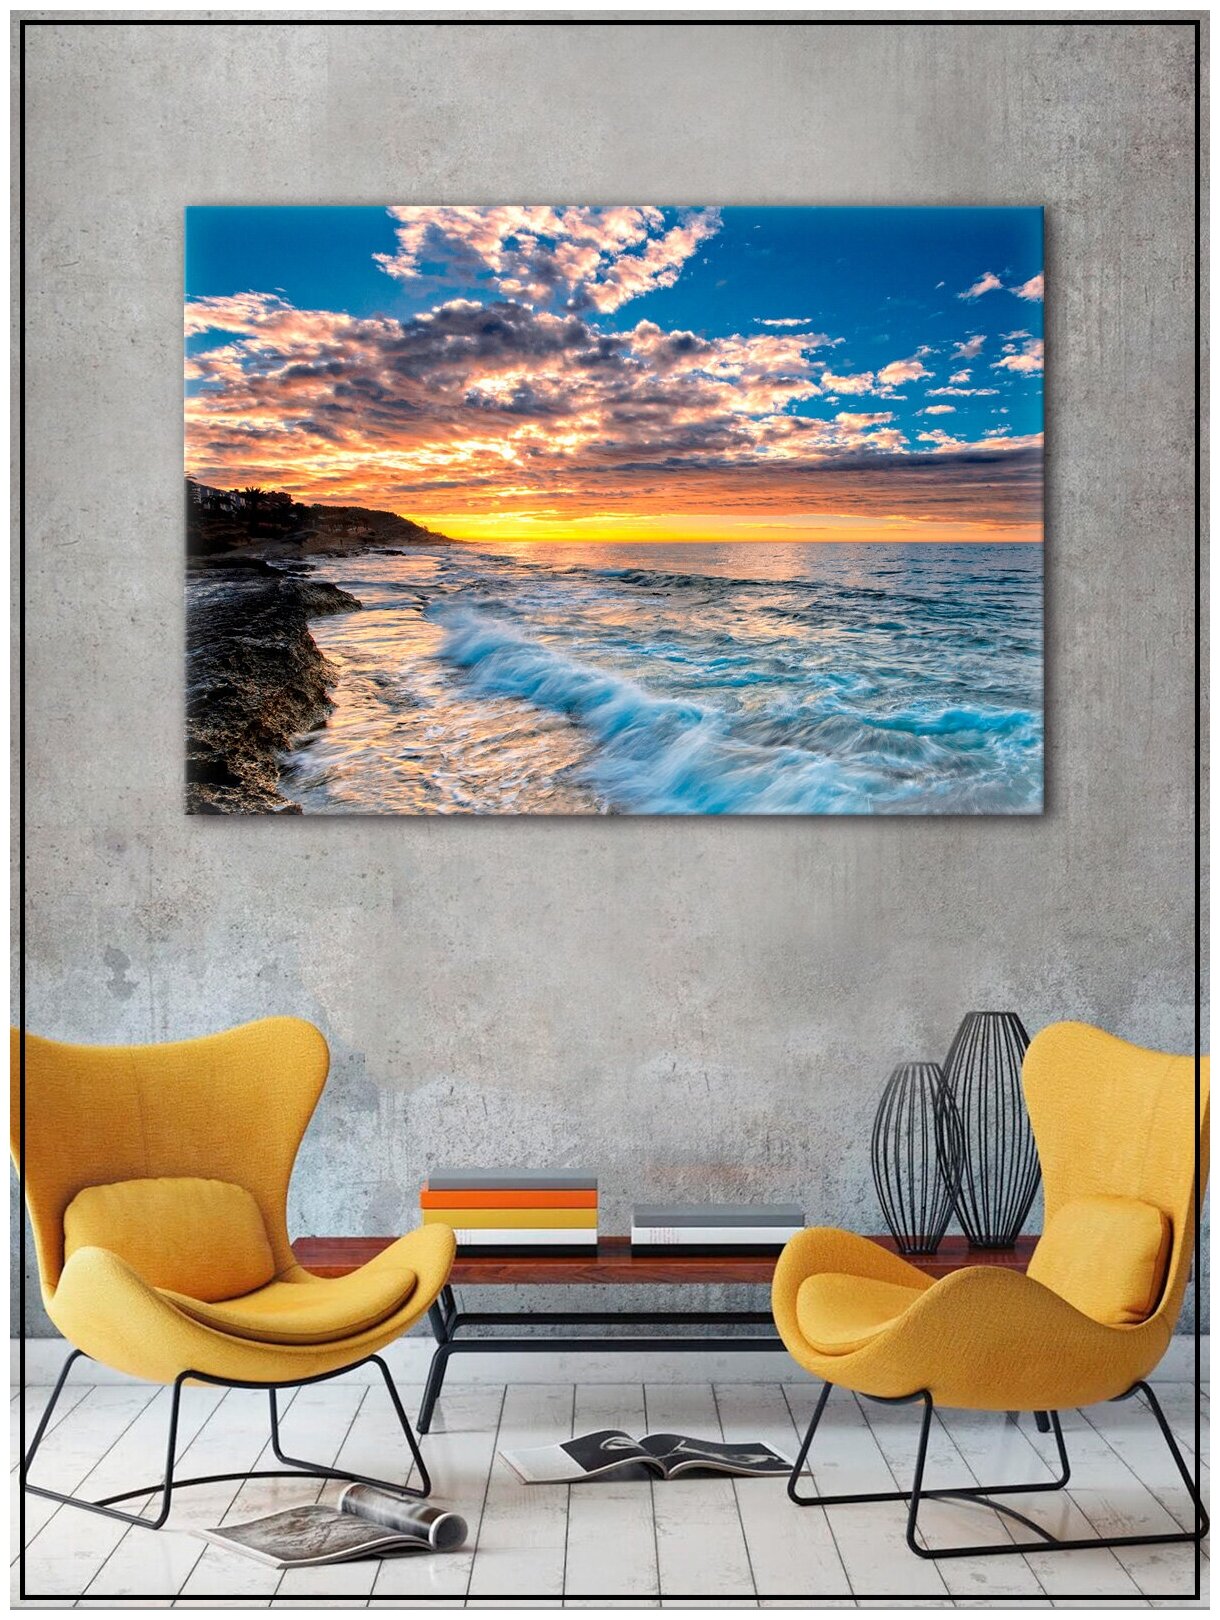 Картина для интерьера на натуральном хлопковом холсте "Рассвет на море", 38*55см, холст на подрамнике, картина в подарок для дома